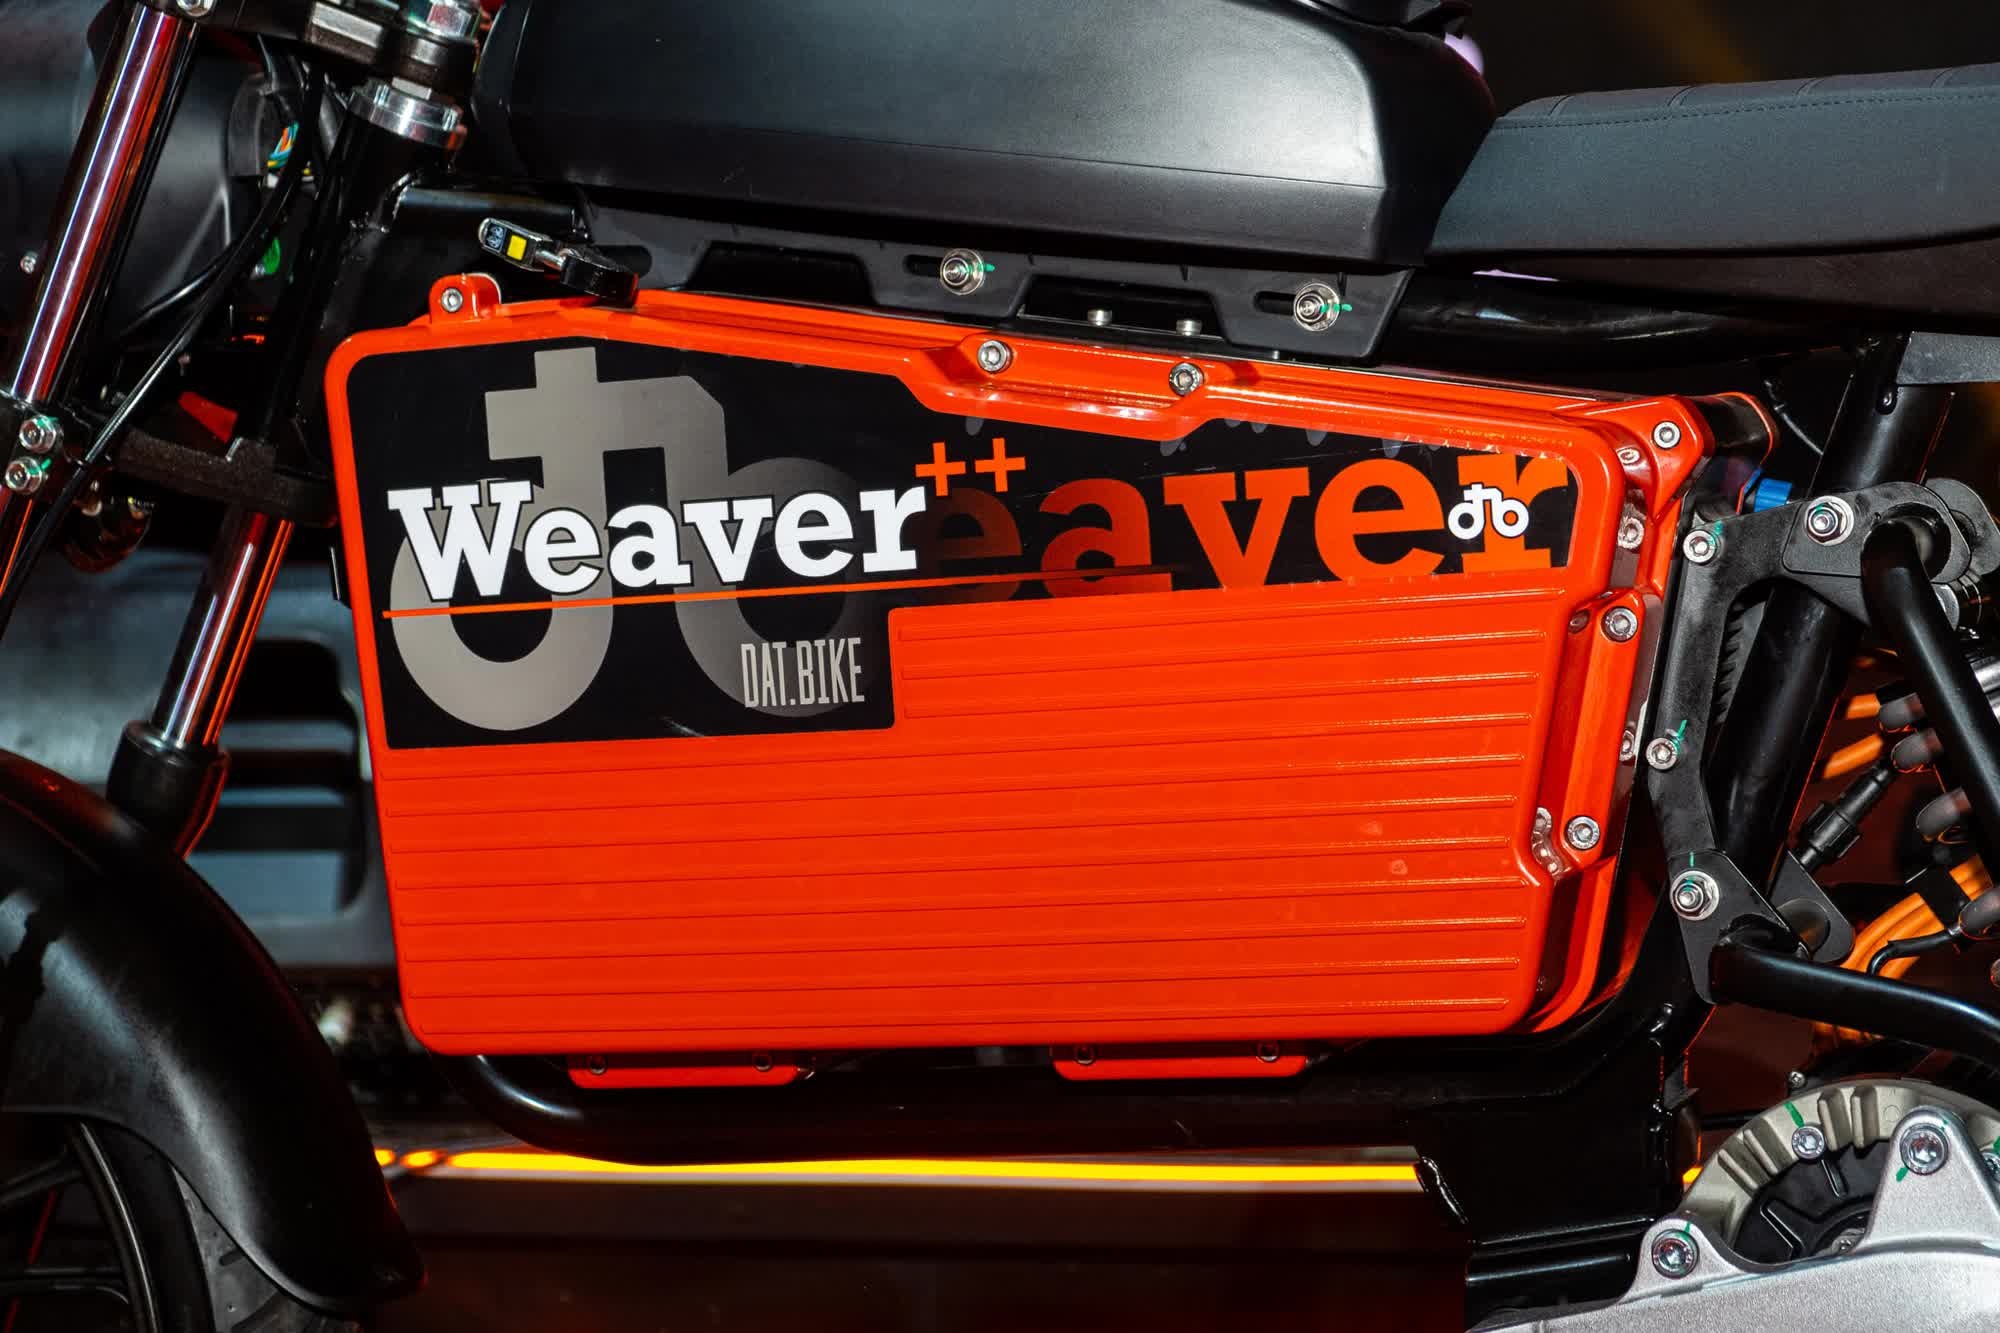 Ra mắt Dat Bike Weaver++: Giá 65,9 triệu đồng, dáng cổ điển, sạc nhanh chưa từng có tại Việt Nam - ảnh 3